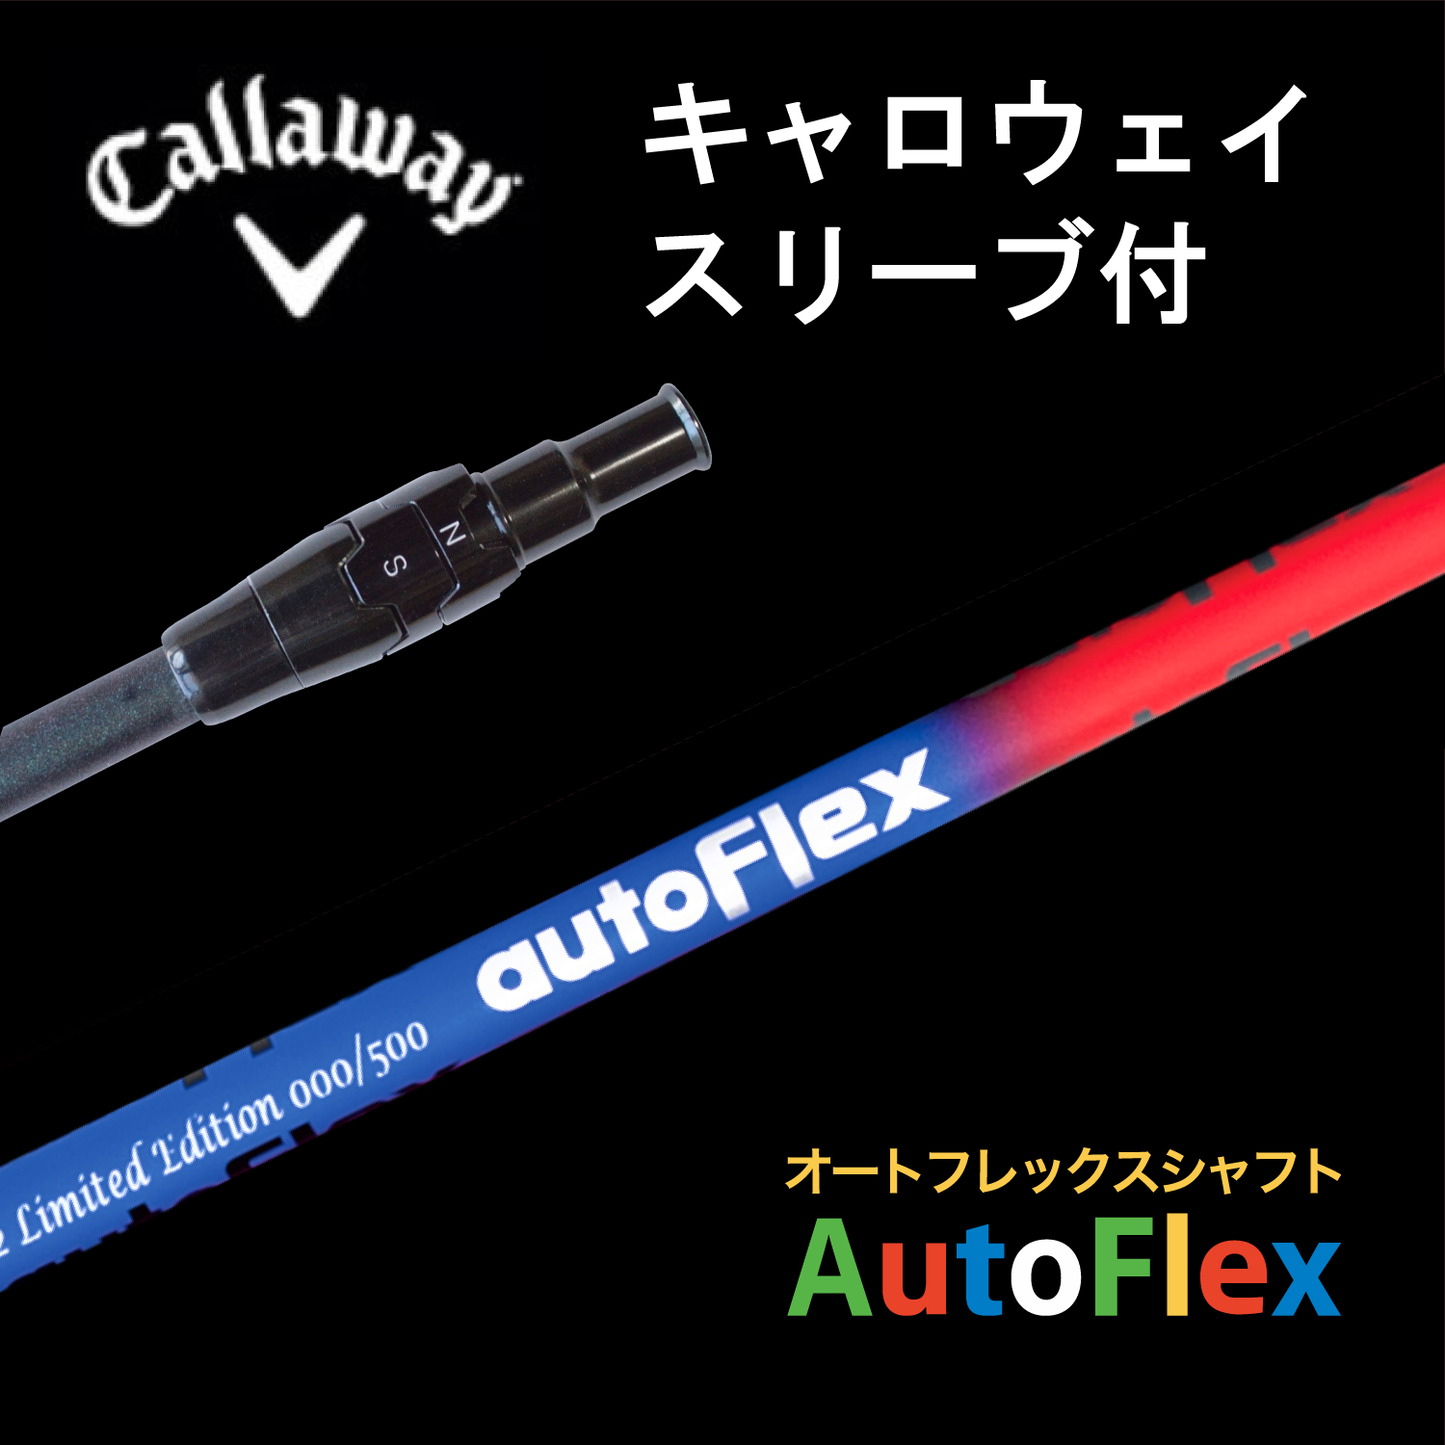 AutoFlex Shaft Limited Edition キャロウェイスリーブ付き